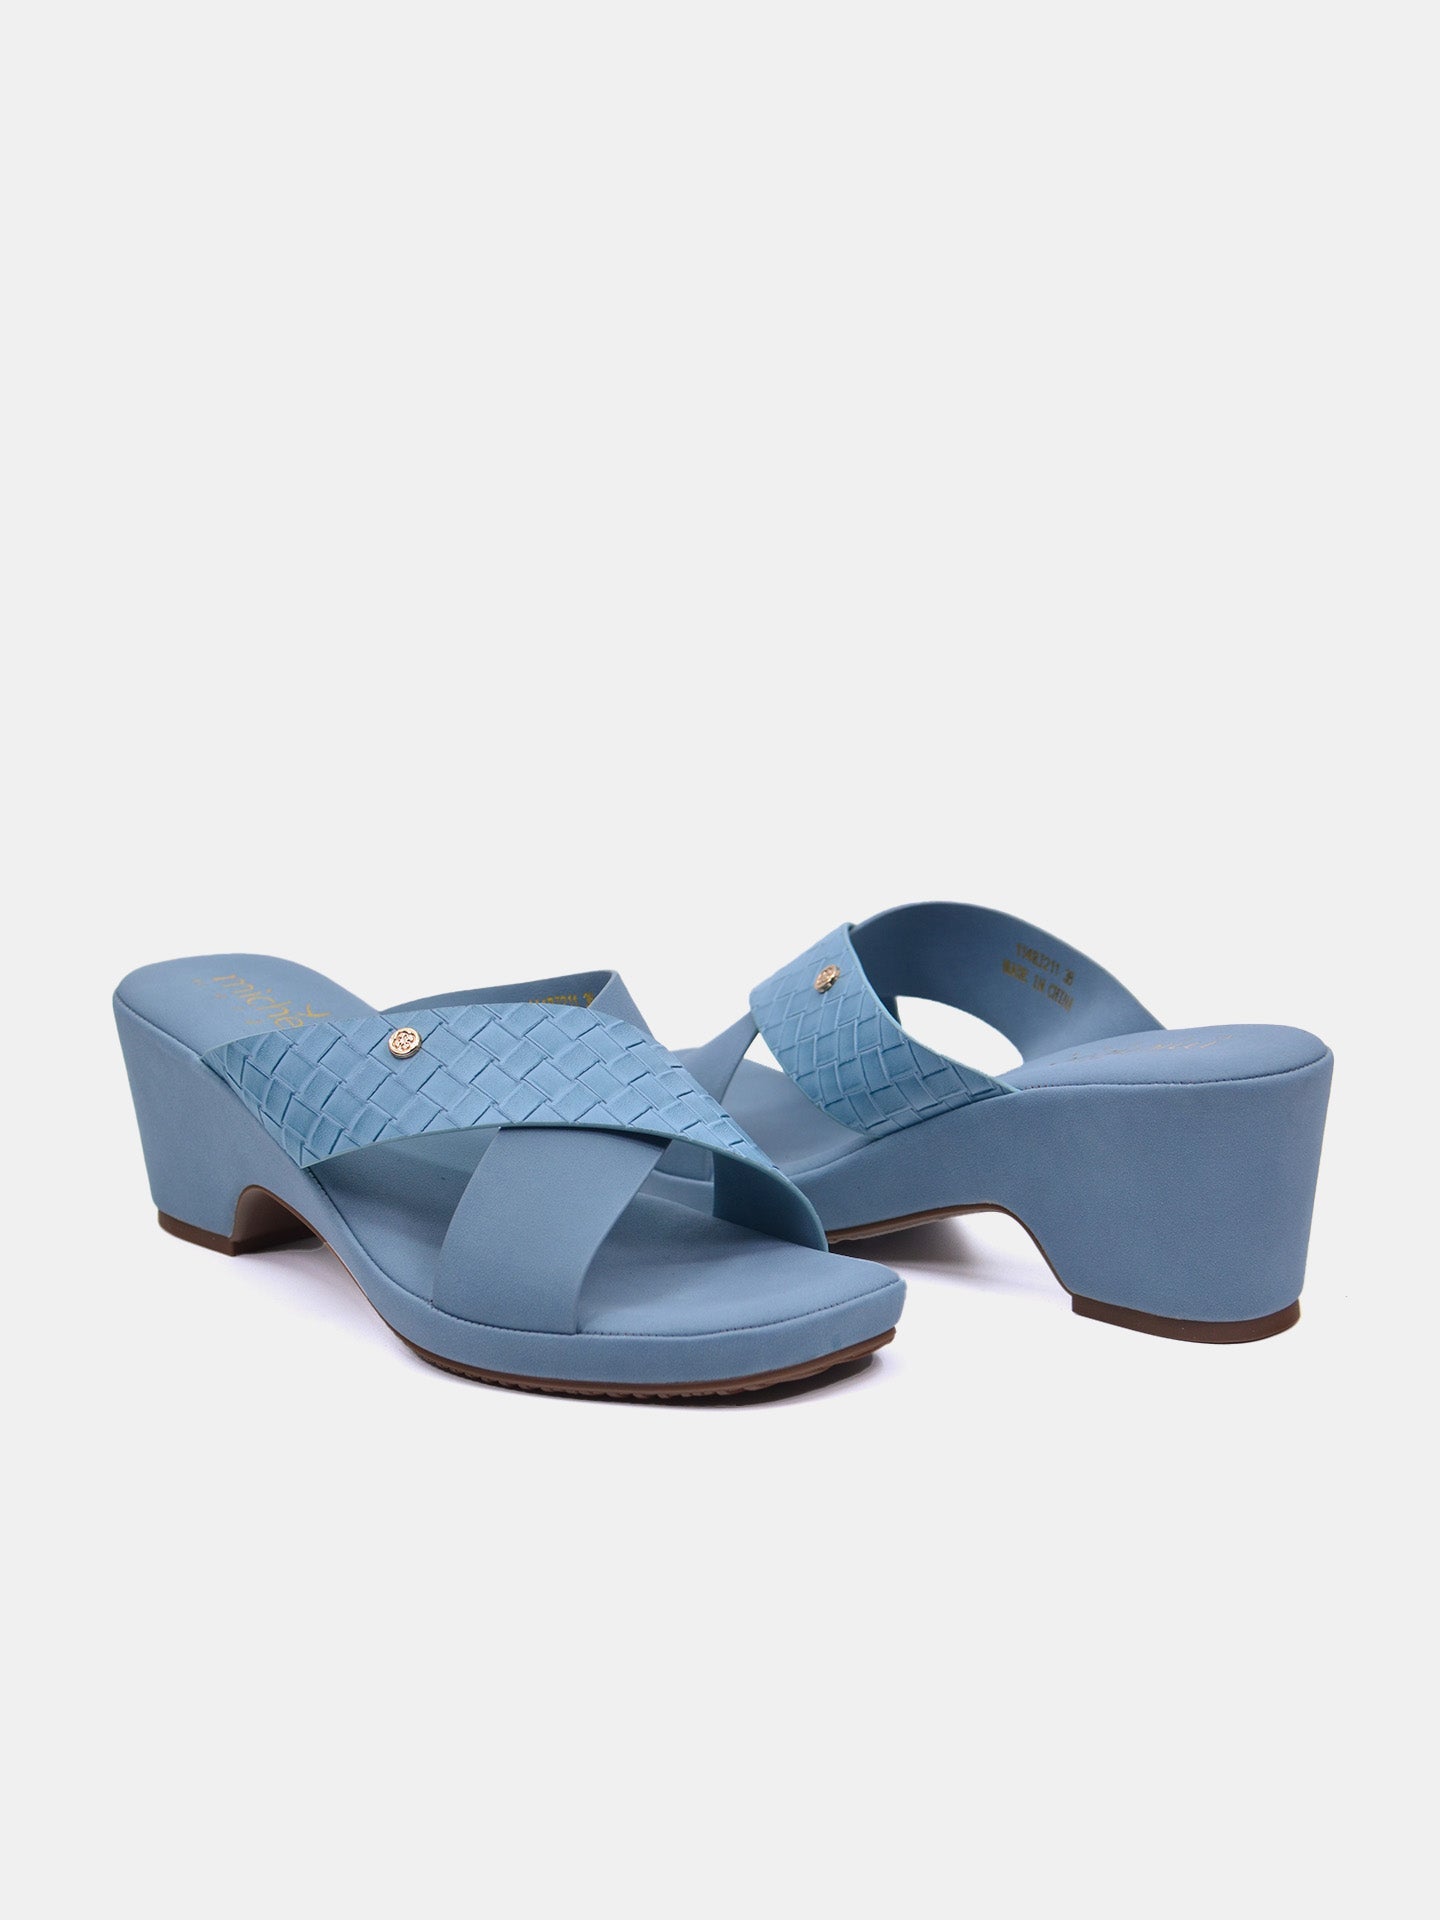 Michelle Morgan 114RJ211 Women's Heeled Sandals #color_Blue